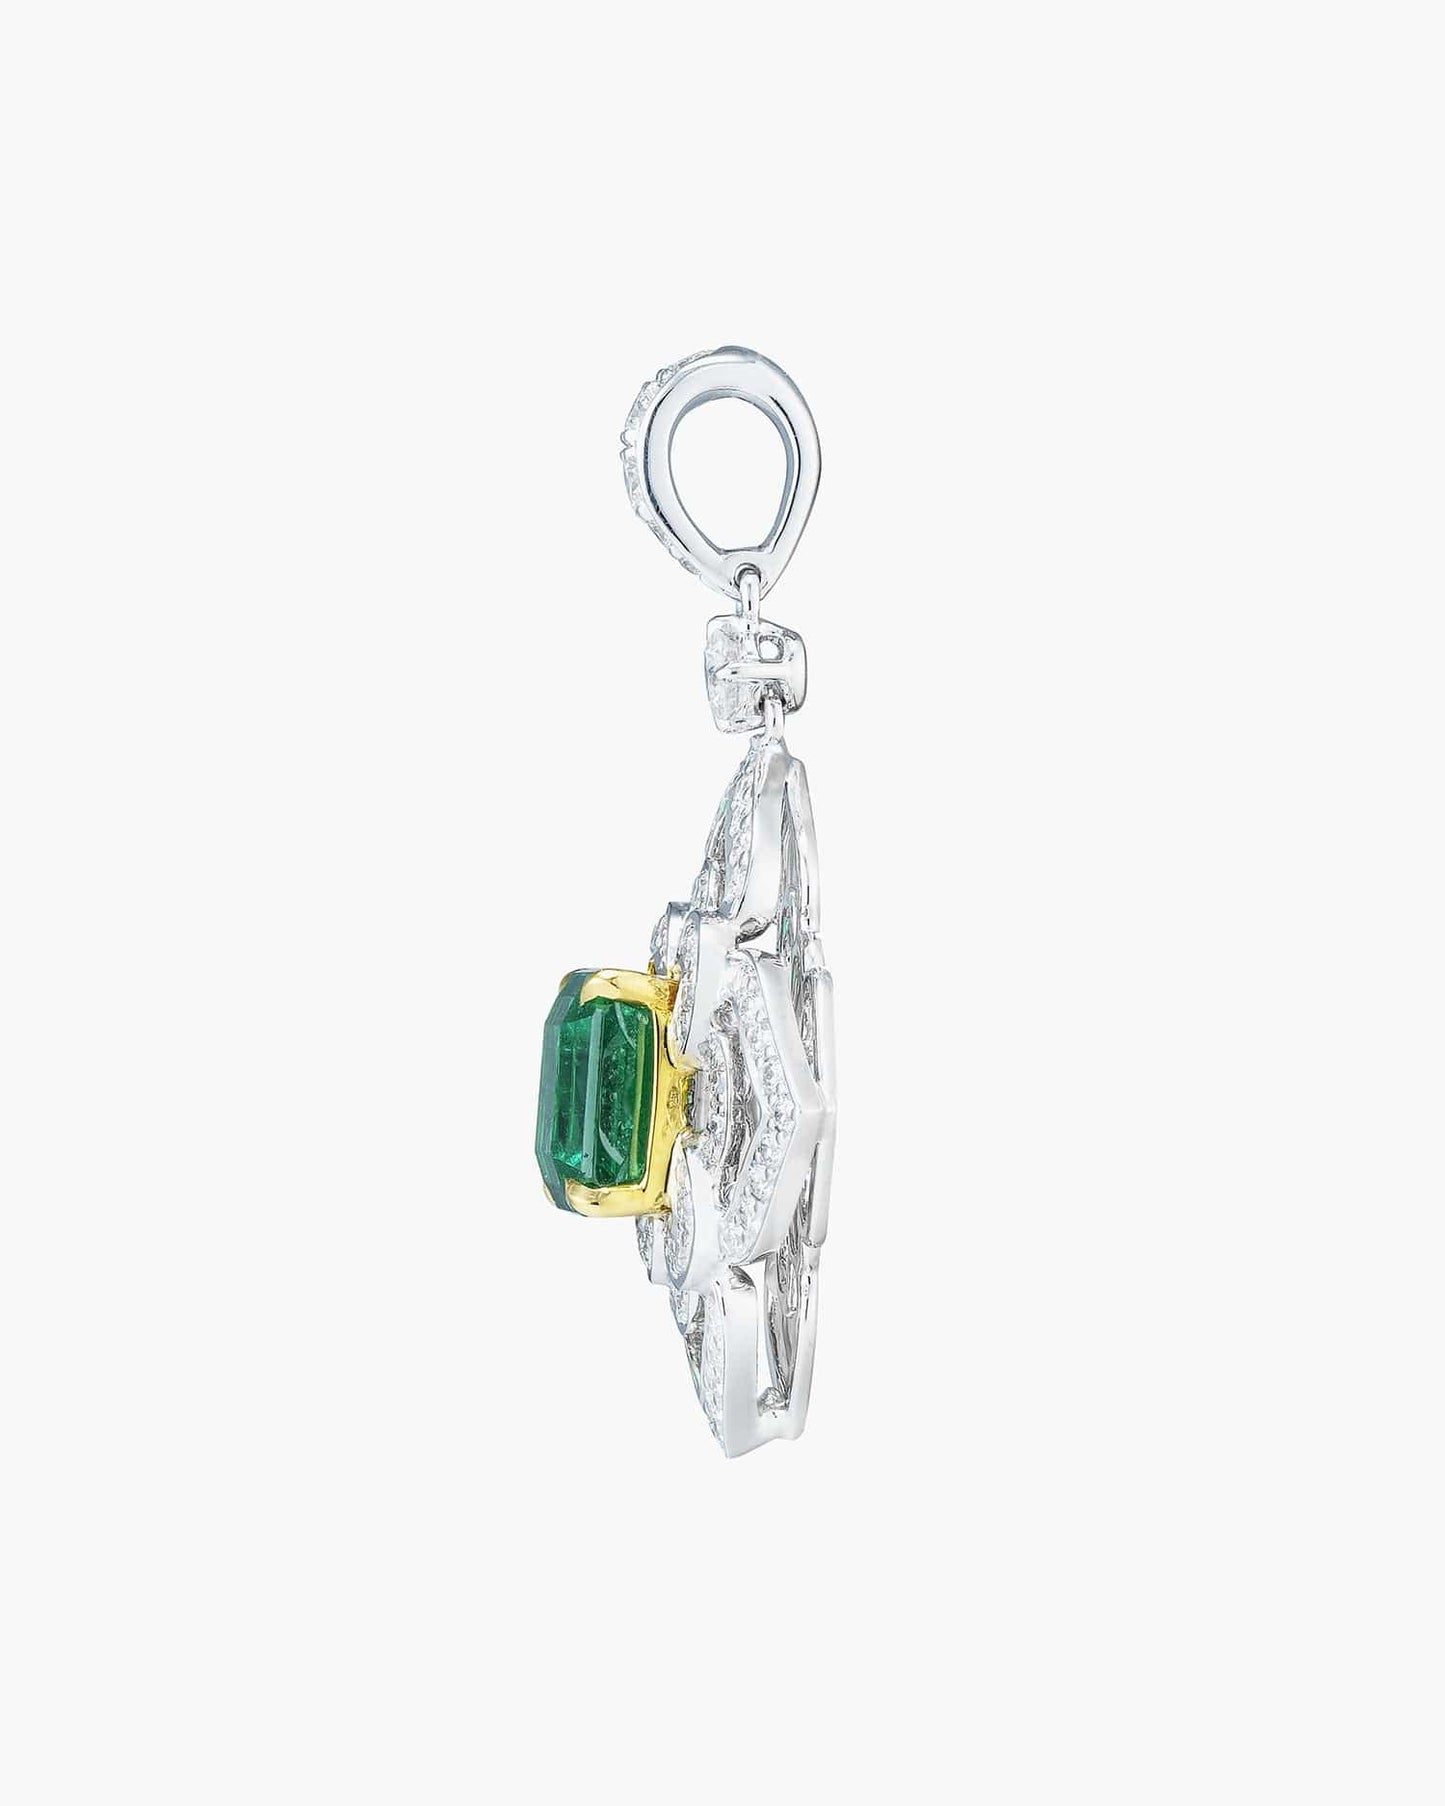 2.36 carat Emerald Cut Colombian Emerald and Diamond Lotus Pendant Necklace